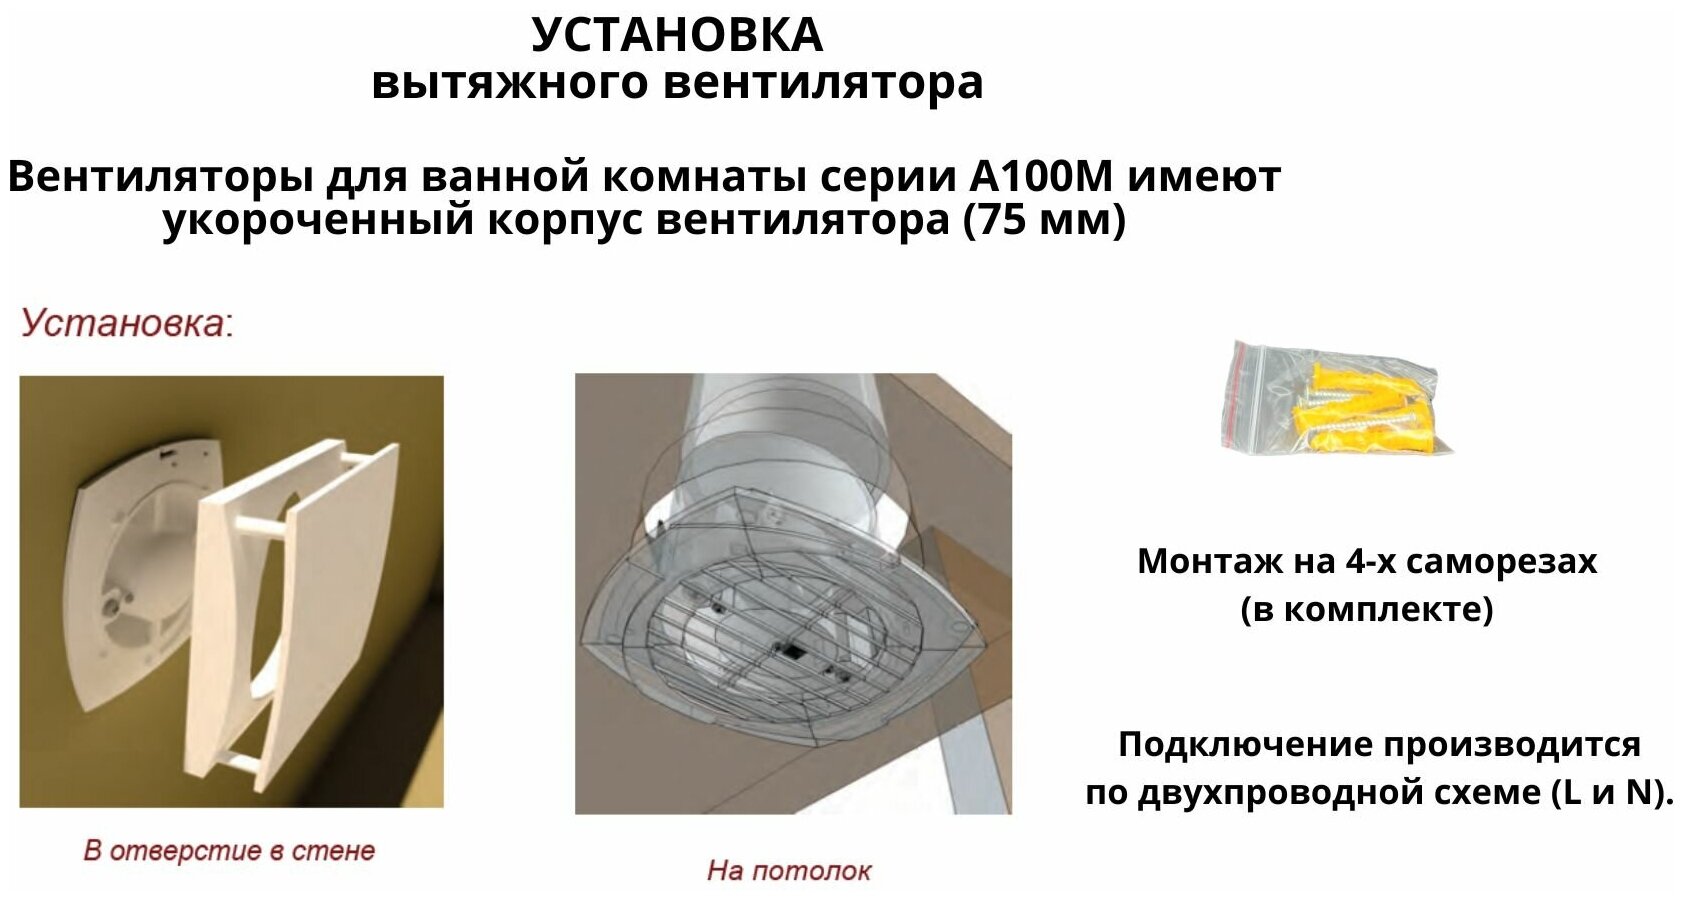 Вентилятор D100мм со стеклянной панелью цвета белой керамики и с обратным клапаном MTG 100М, Сербия - фотография № 4